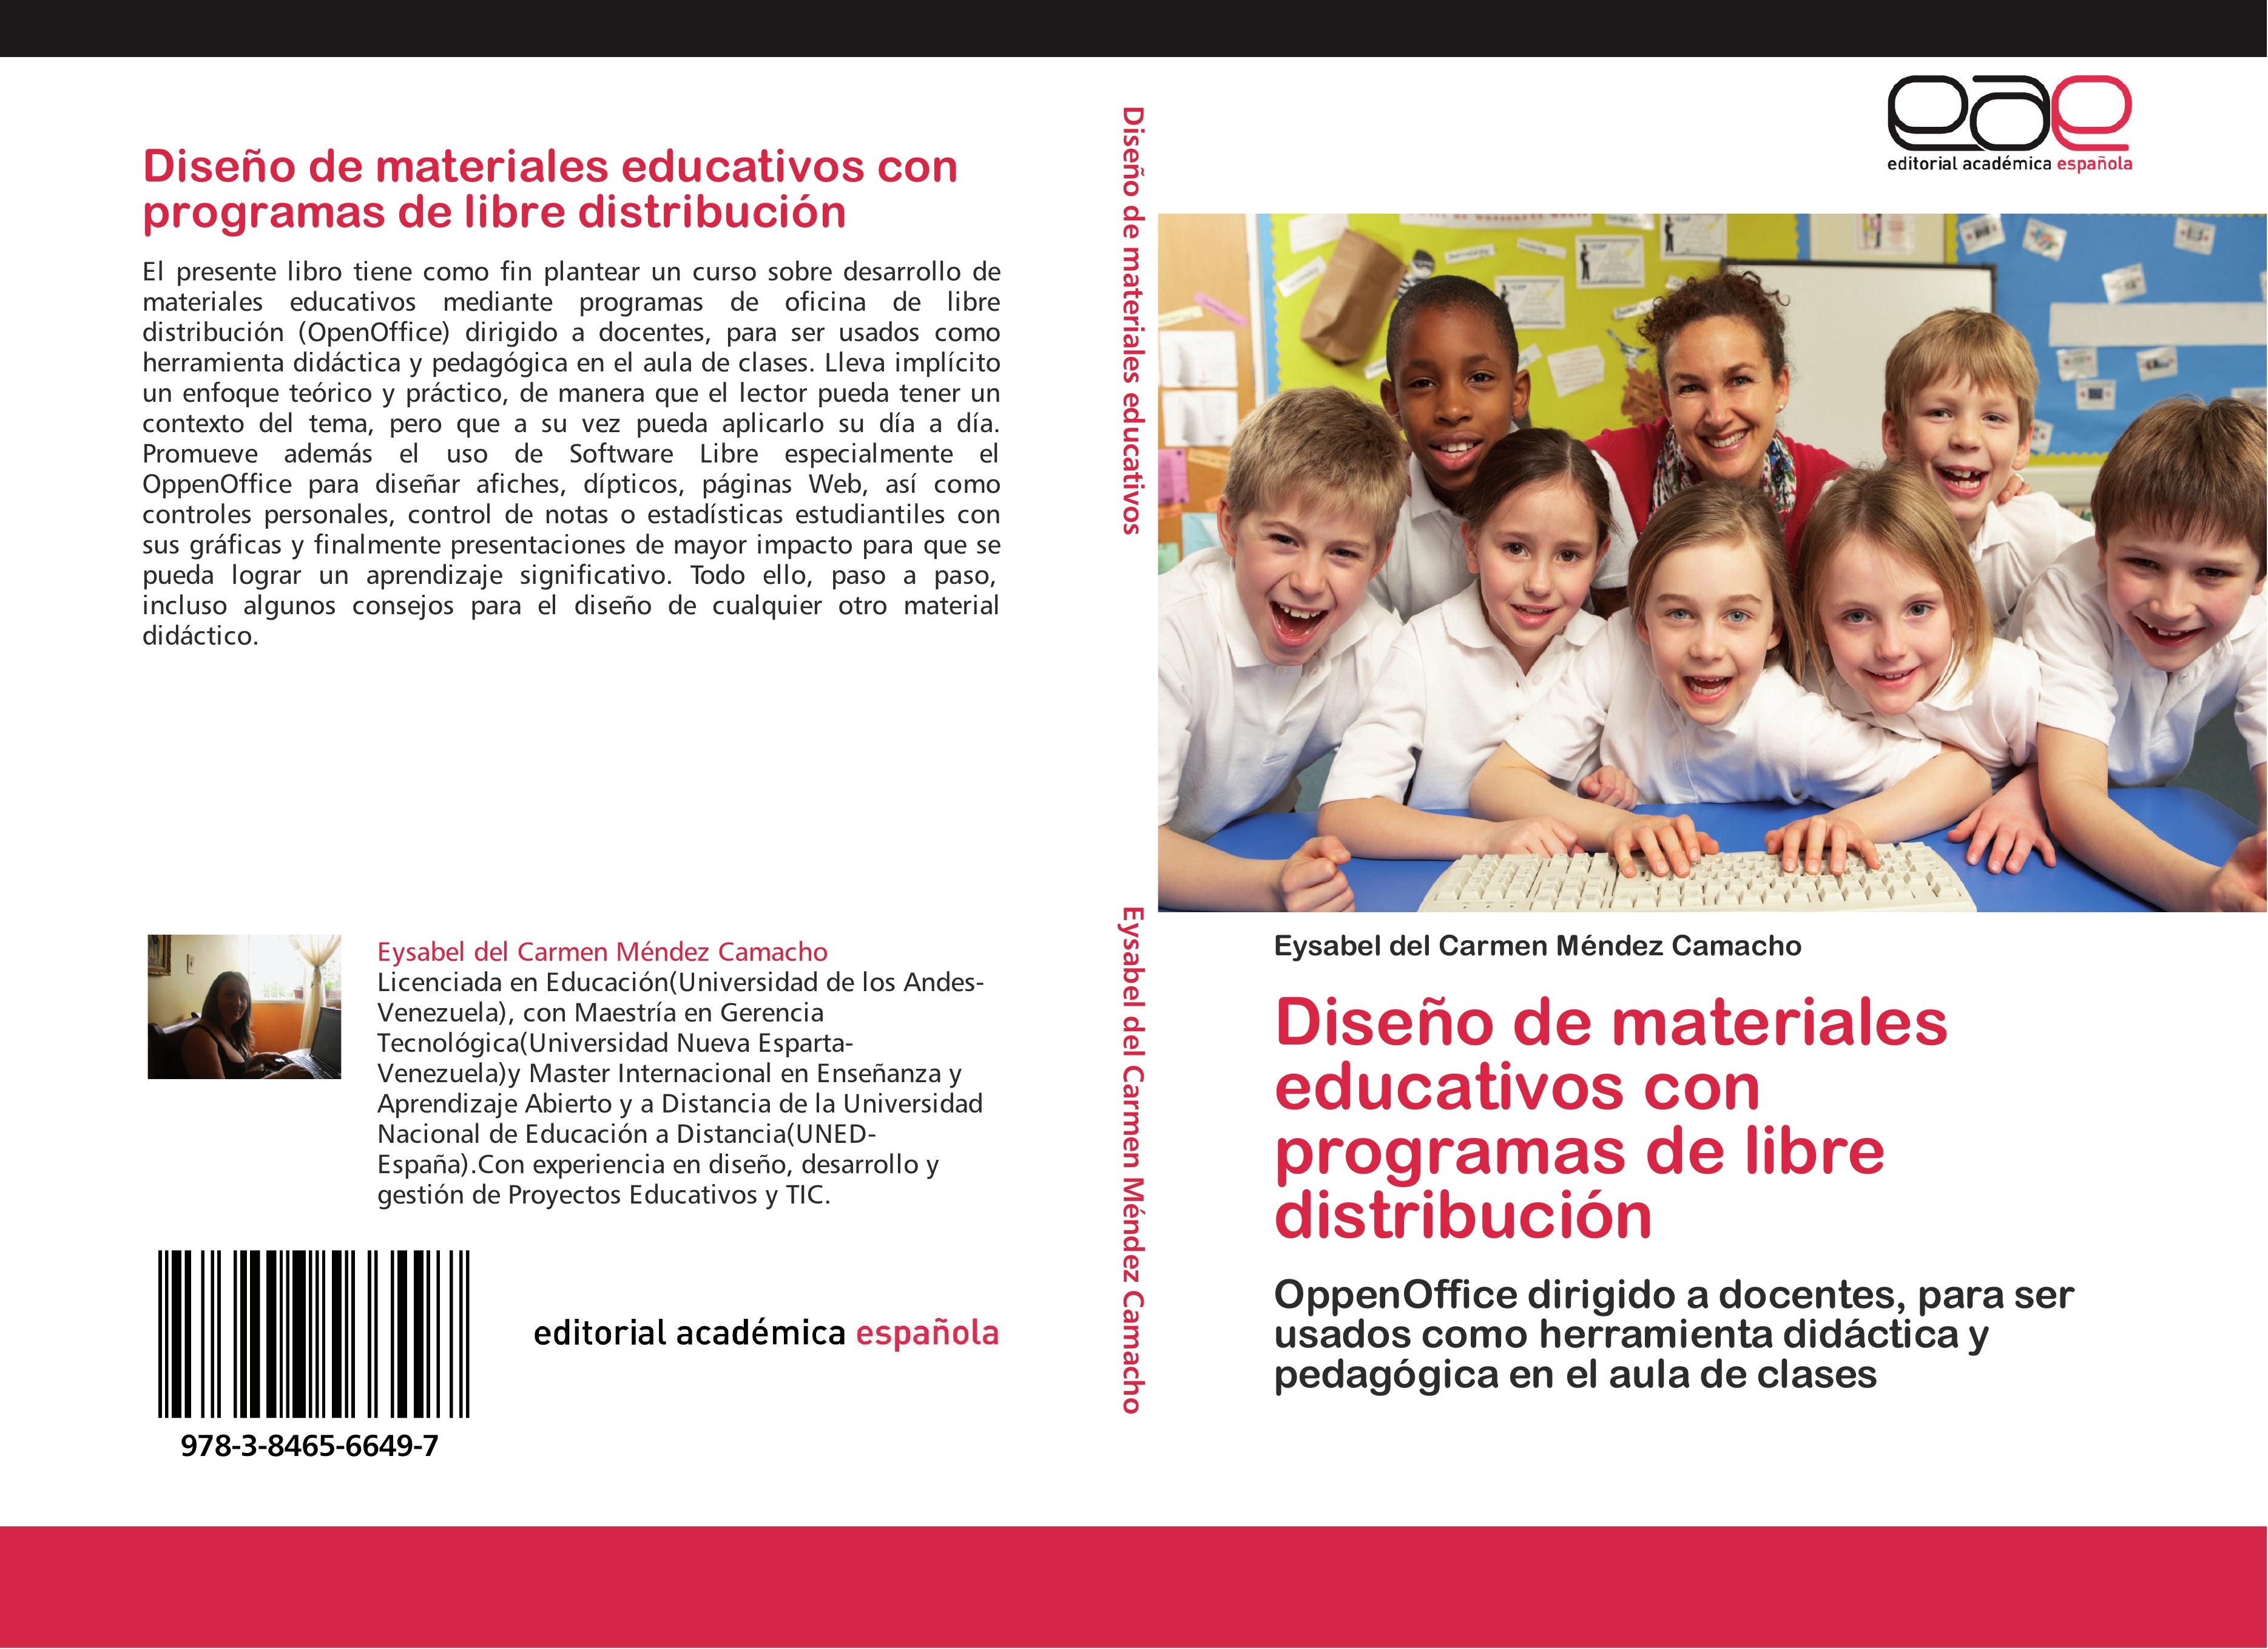 Diseño de materiales educativos con programas de libre distribución